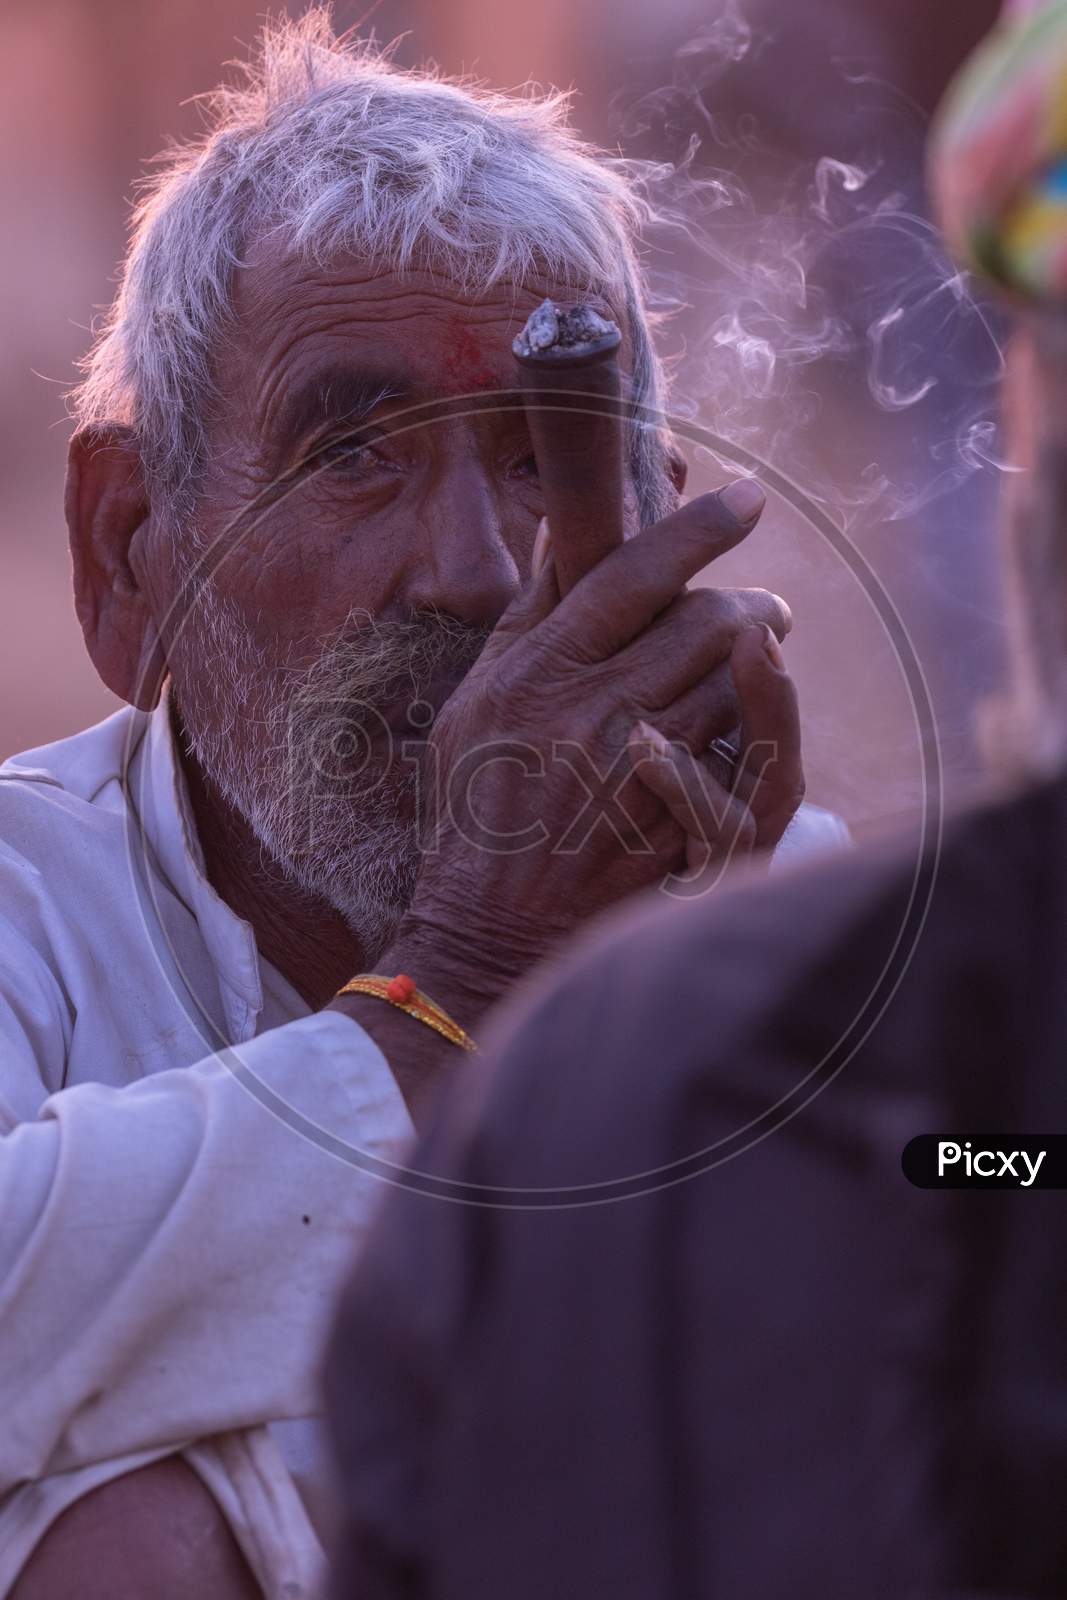 A rural Indian man siting an smoking tobacco inside a pipe at Pushkar, Rajasthan